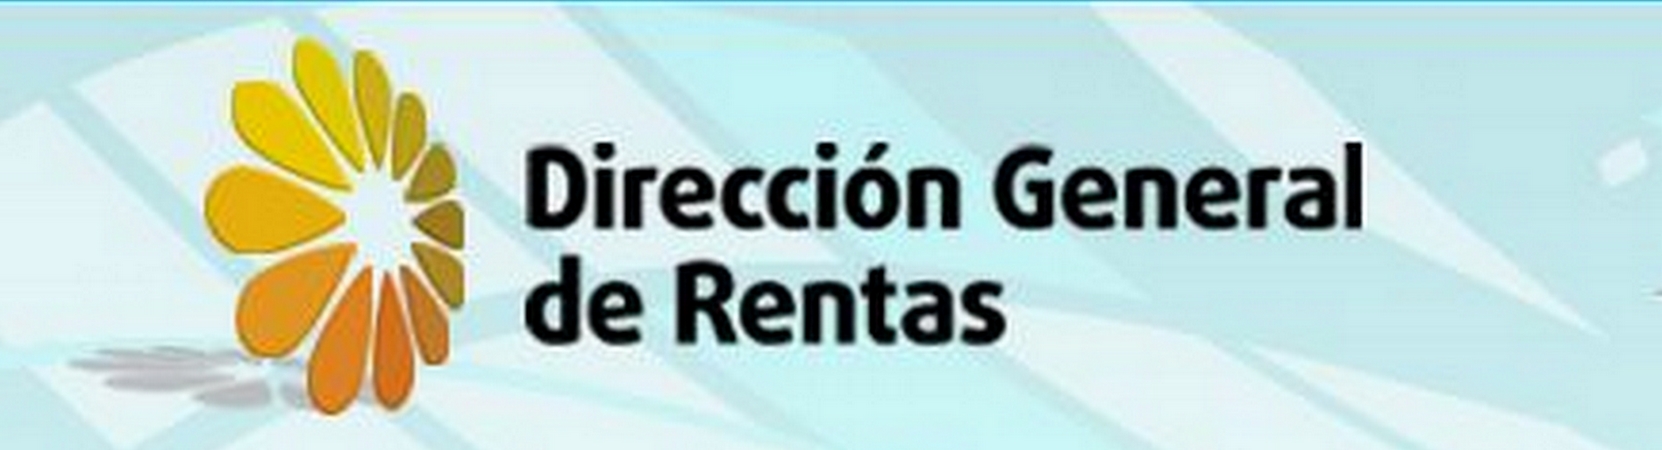 Logo Direccion General de Rentas